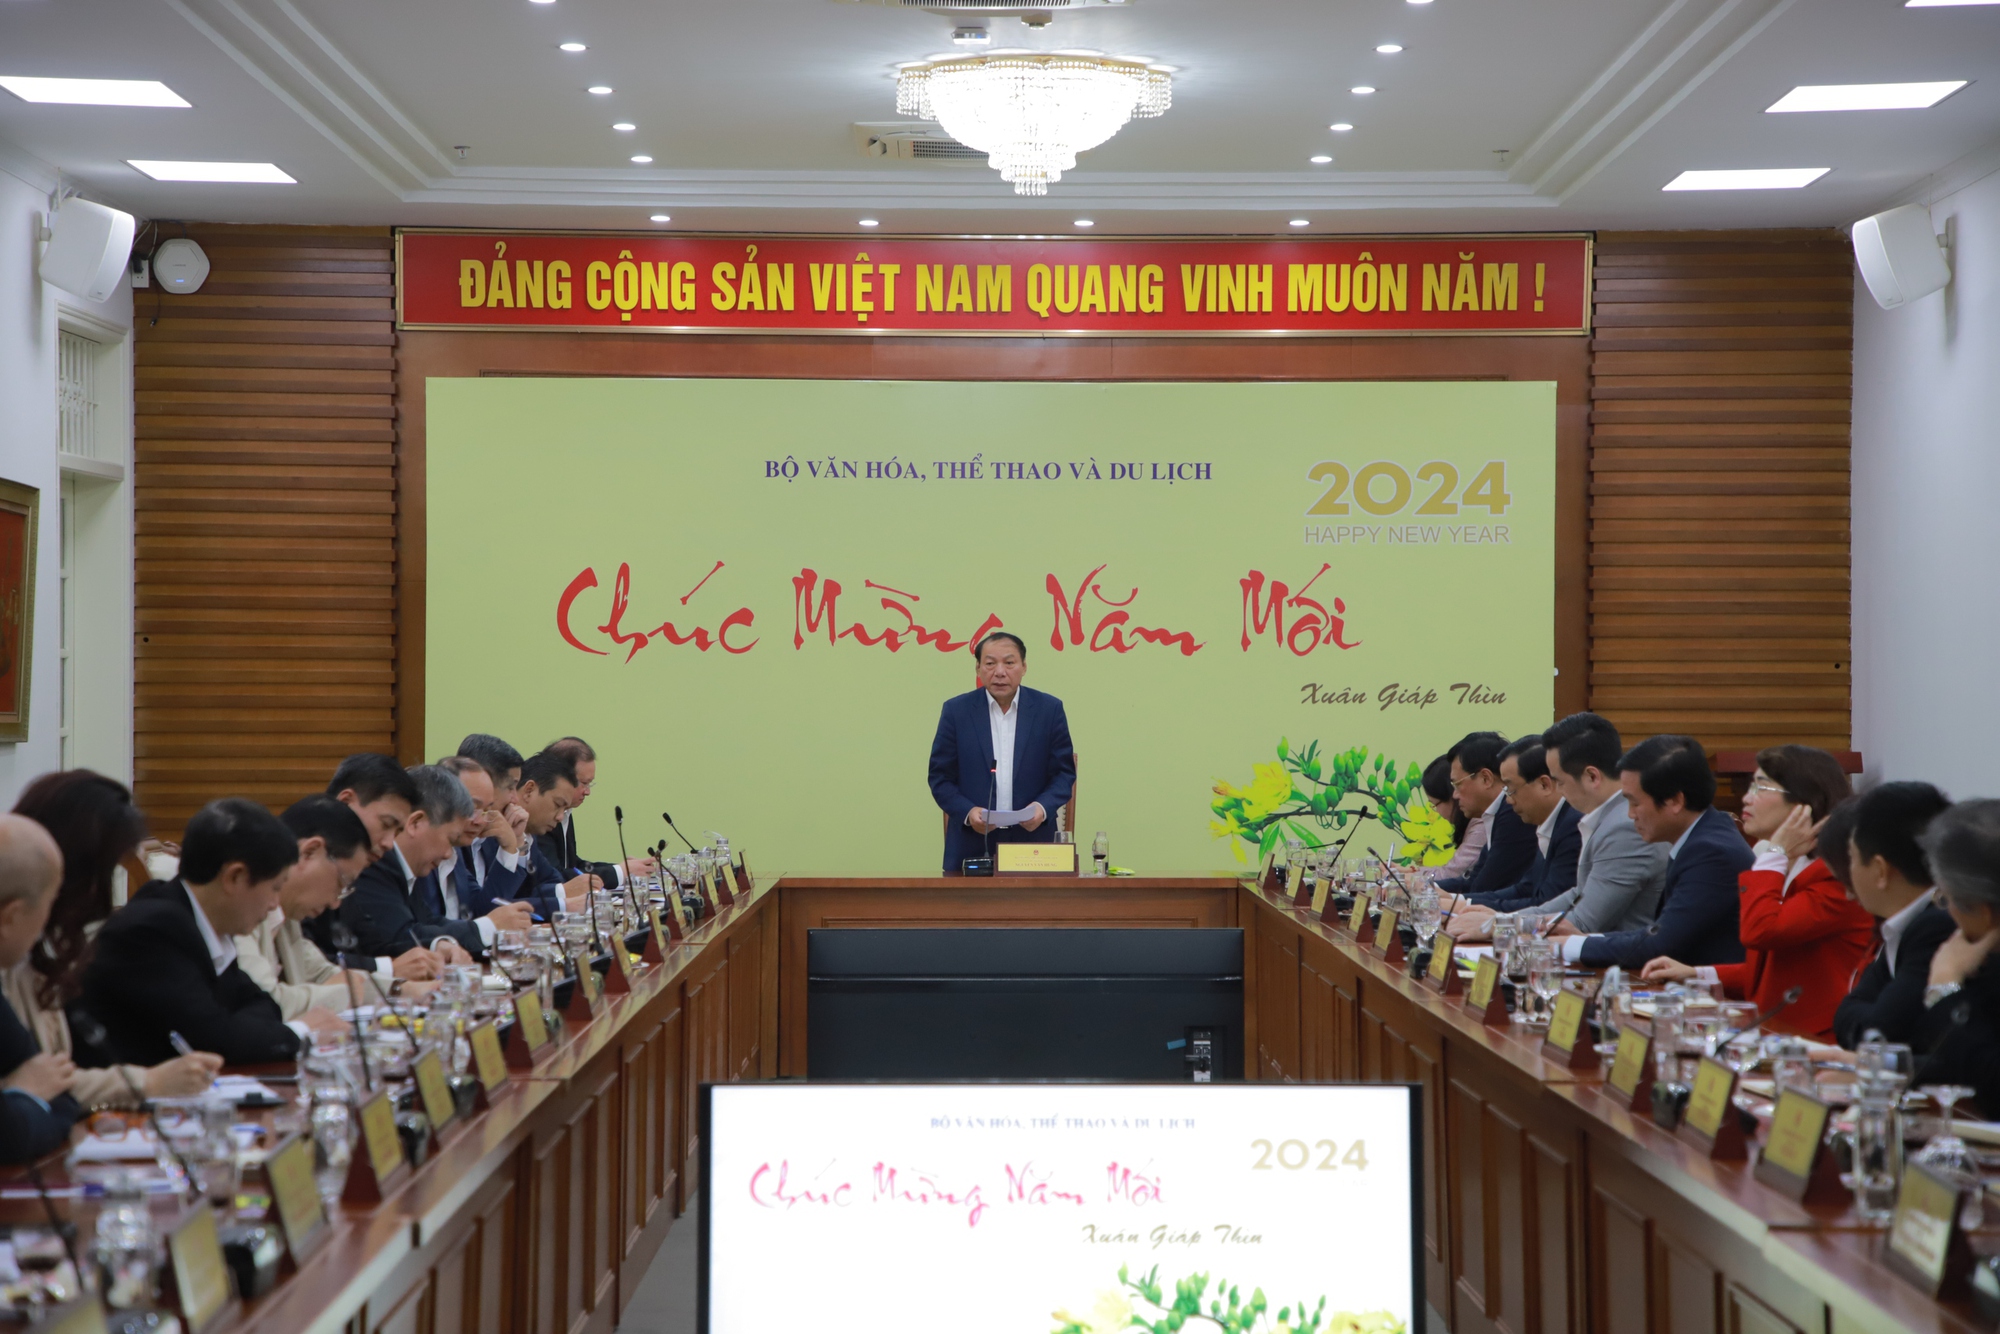 Bộ trưởng Nguyễn Văn Hùng: Chúng ta có quyền tự hào khi vai trò, vị thế của văn hóa ngày càng được nâng cao - Ảnh 1.